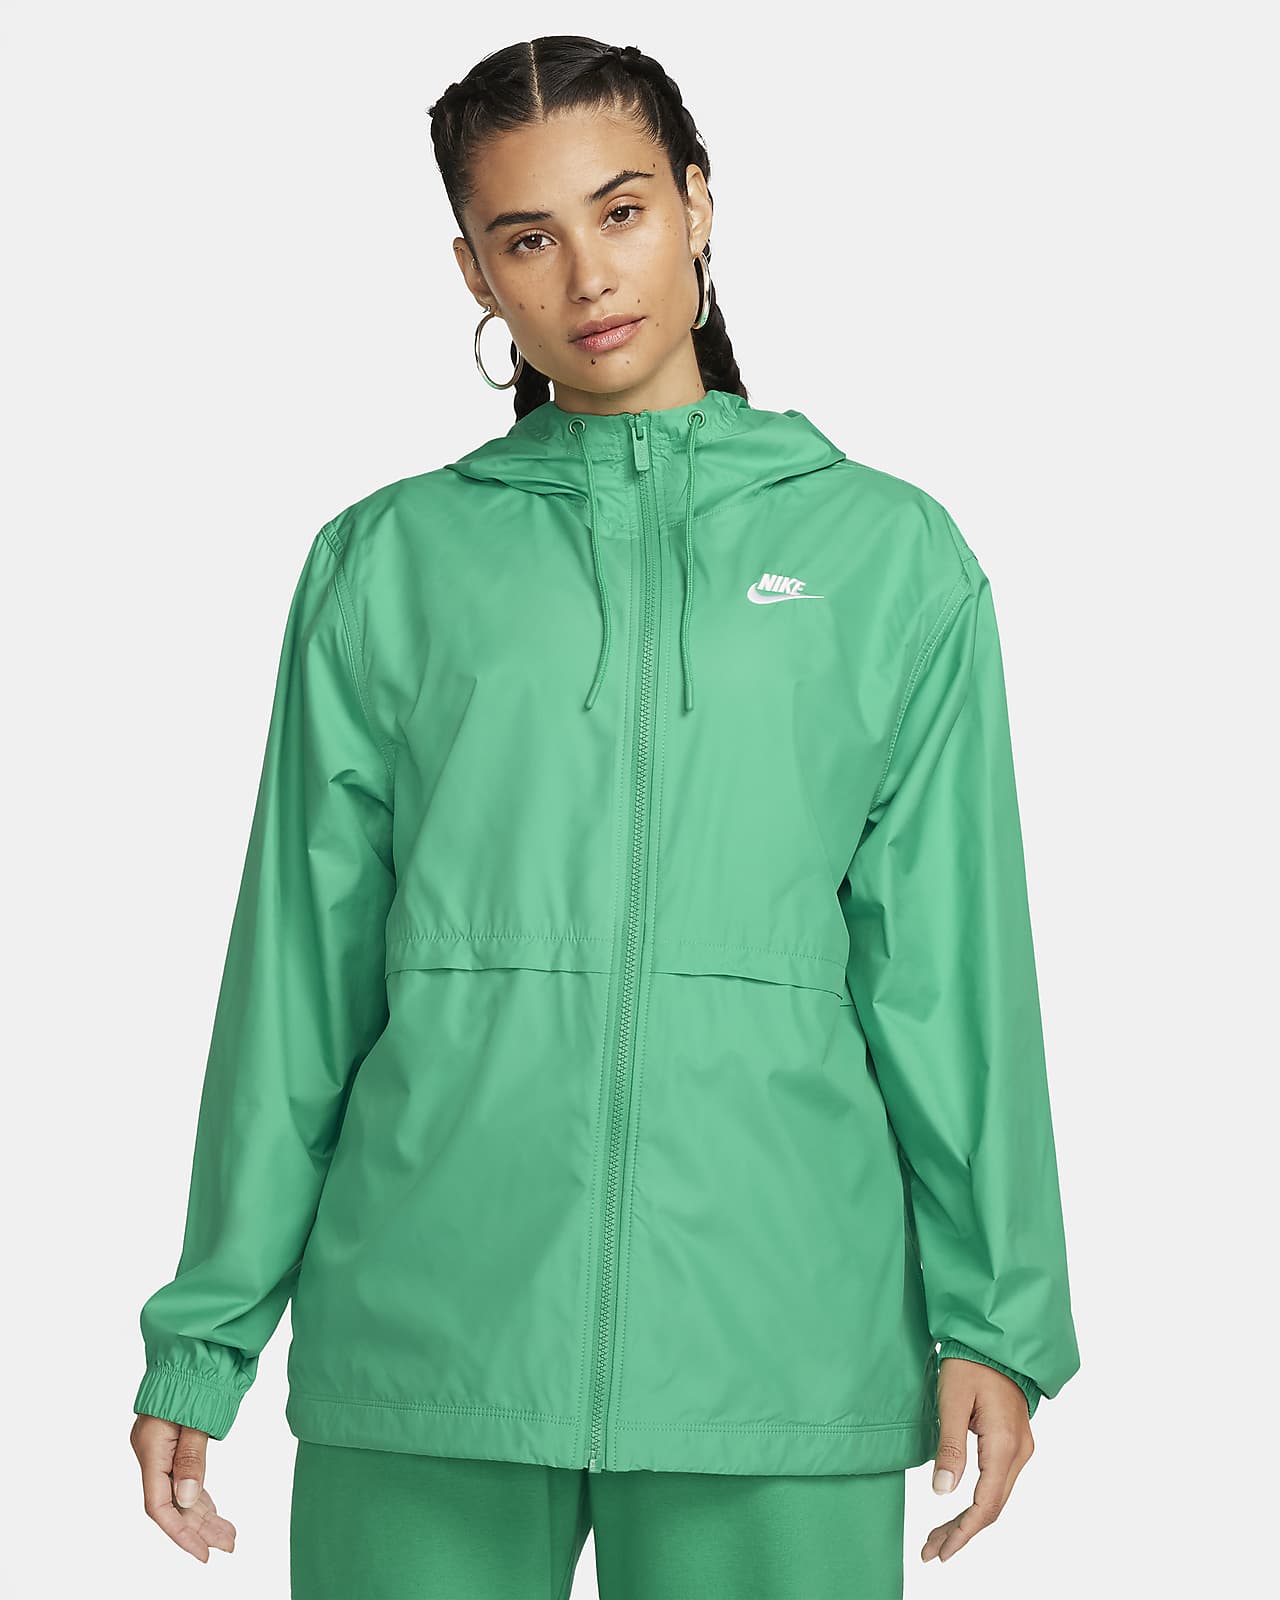 Nike Sportswear Essential Boyfriend Swoosh Women's Woven Jacket White  DM6181-100